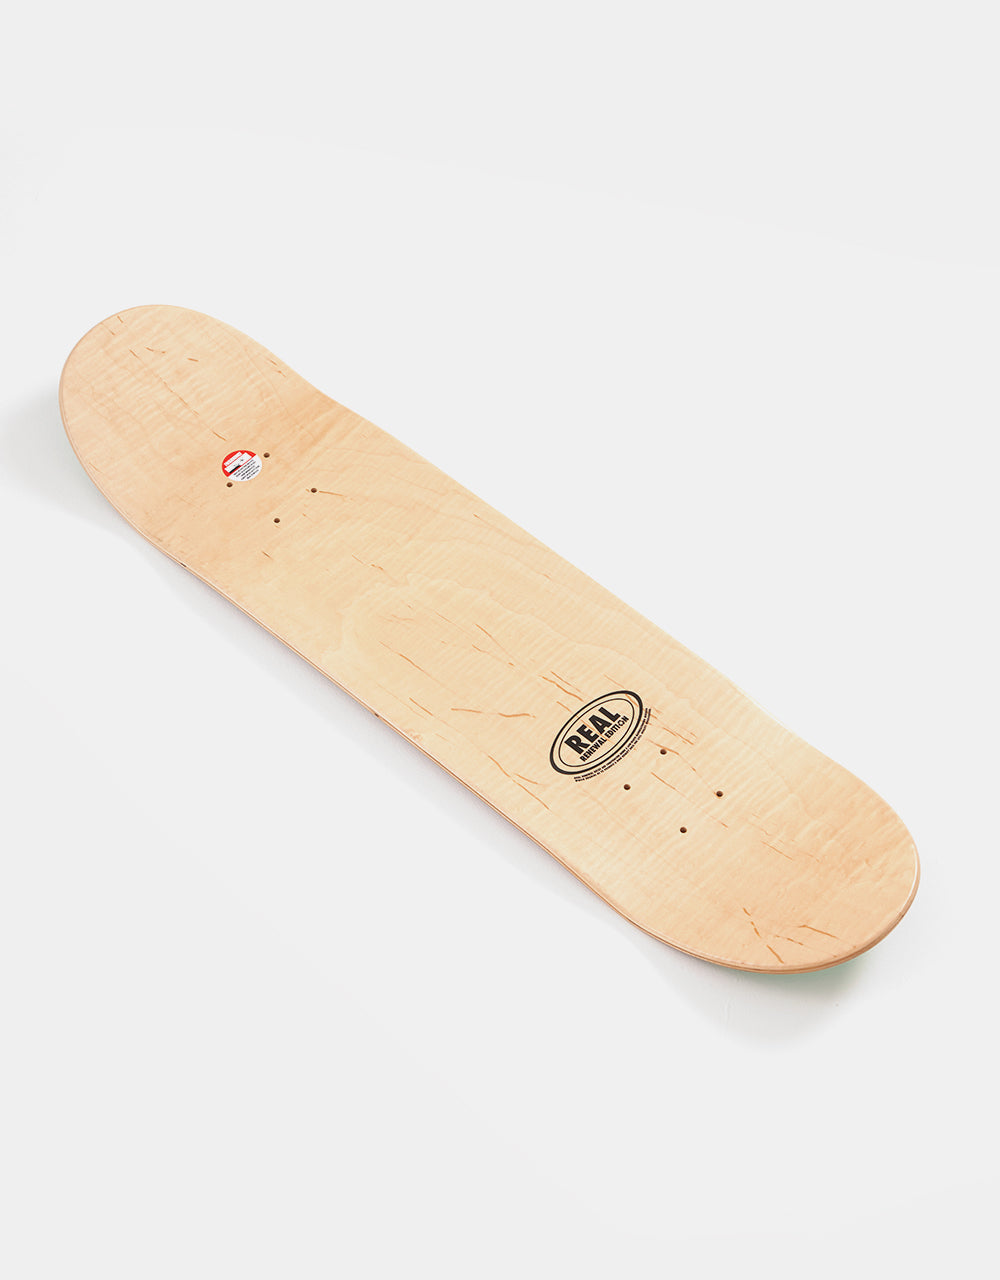 Real Renewal Doves Skateboard Deck - 8.06"